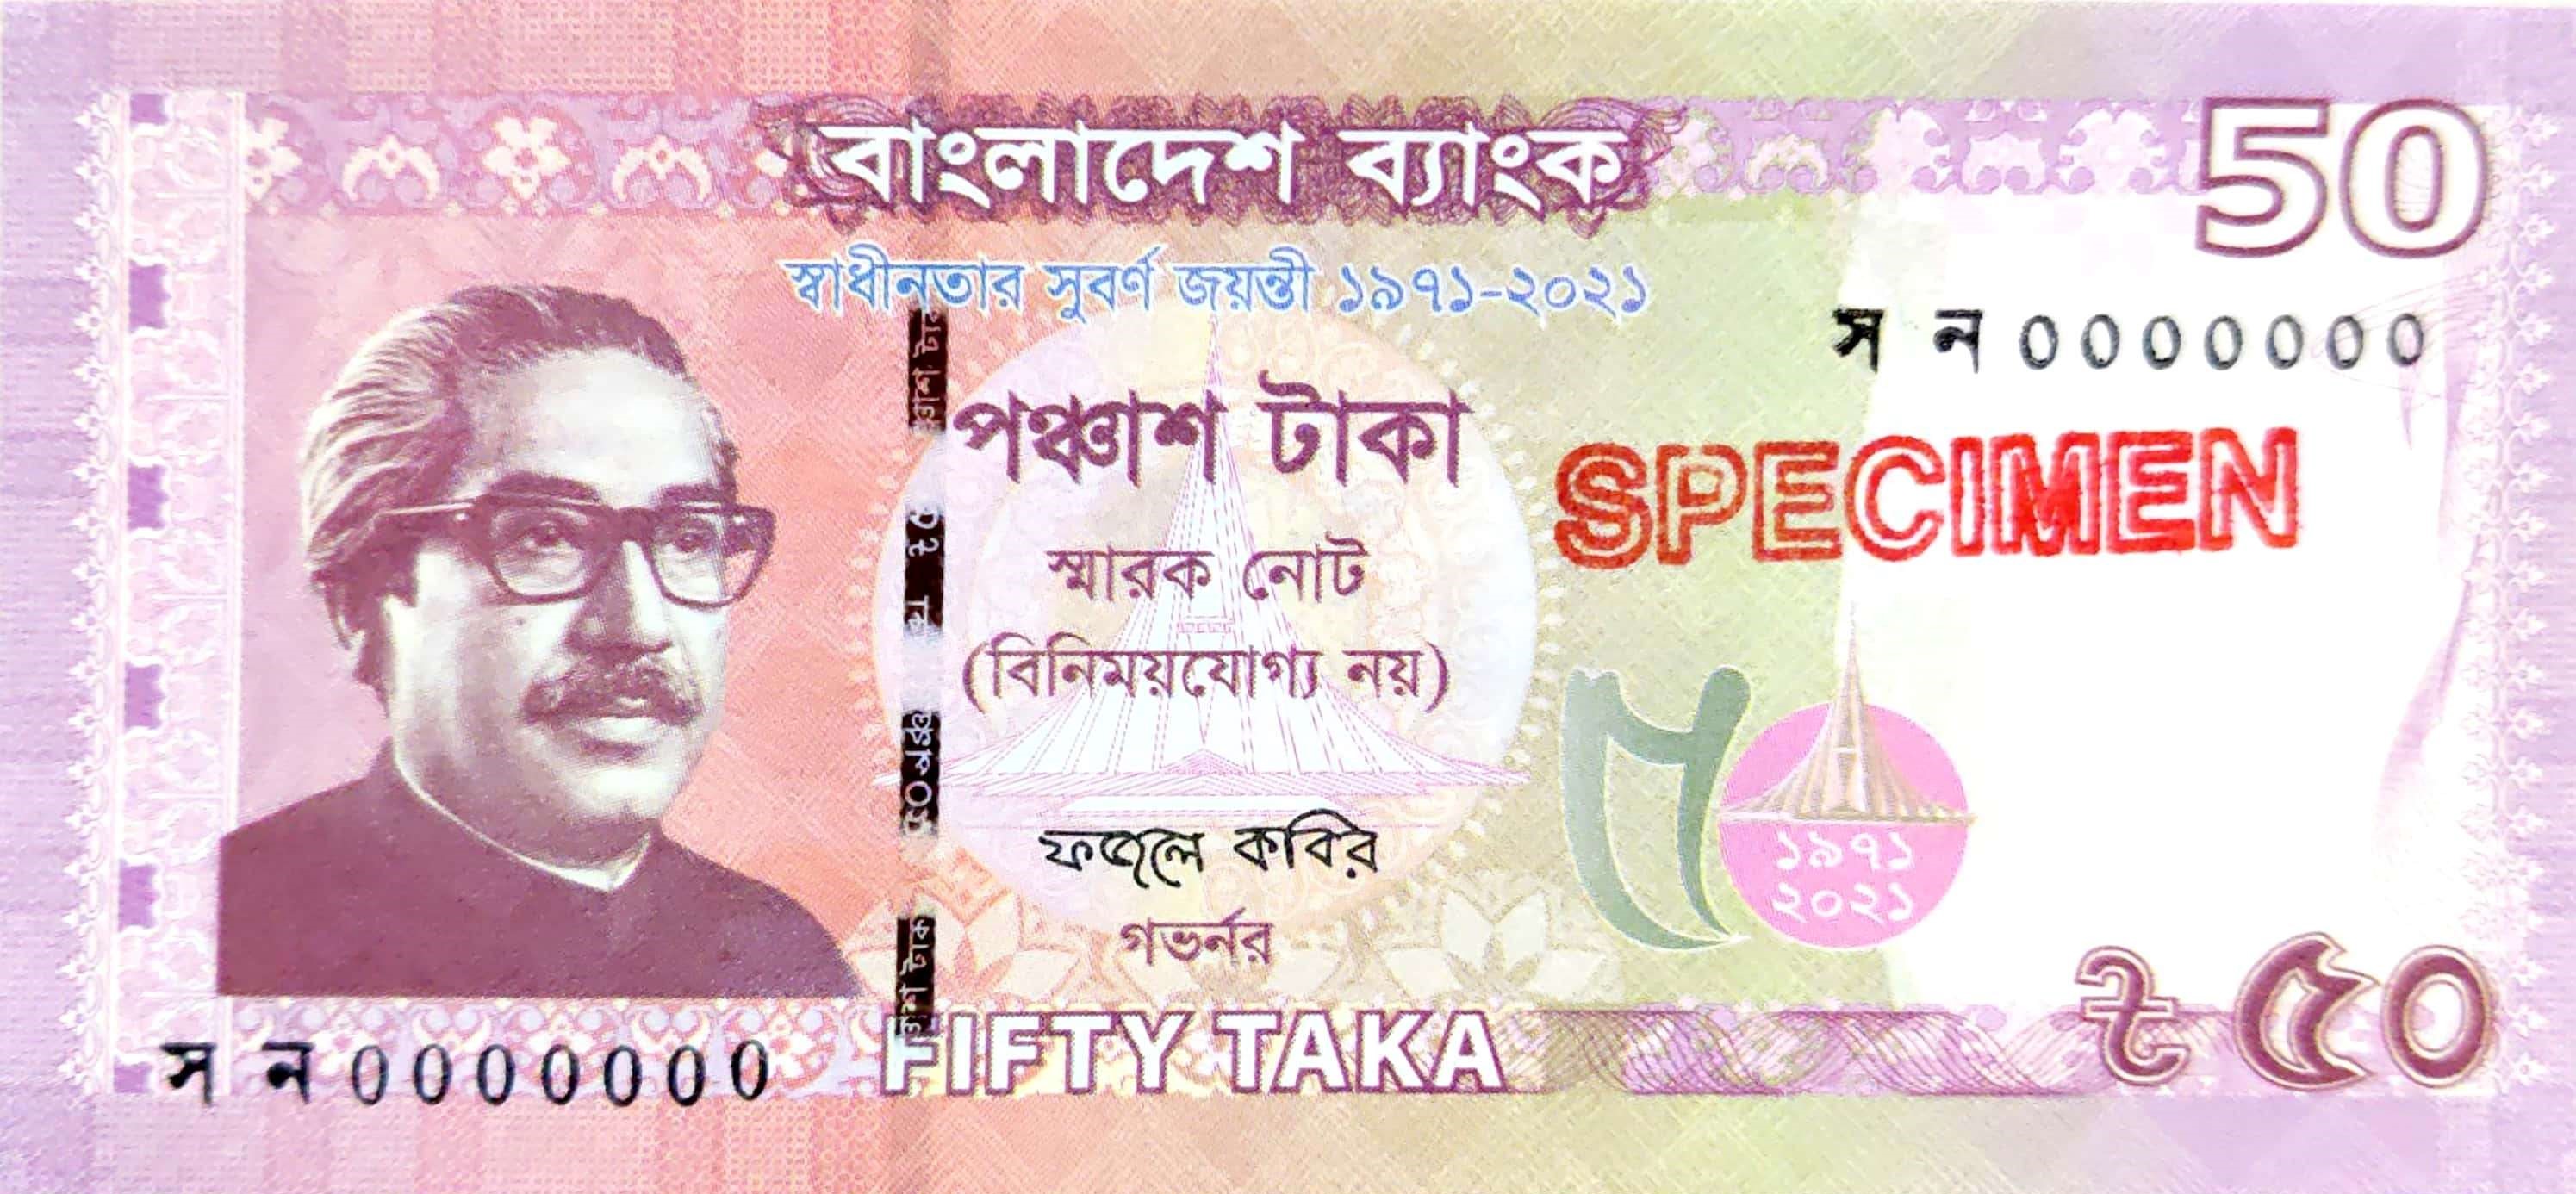 Automotivo xm taka taka taka taka. Така Бангладеш. Бангладеш 50. Банкноты Бангладеш. Памятная банкнота номиналом 50 така Бангладеш.